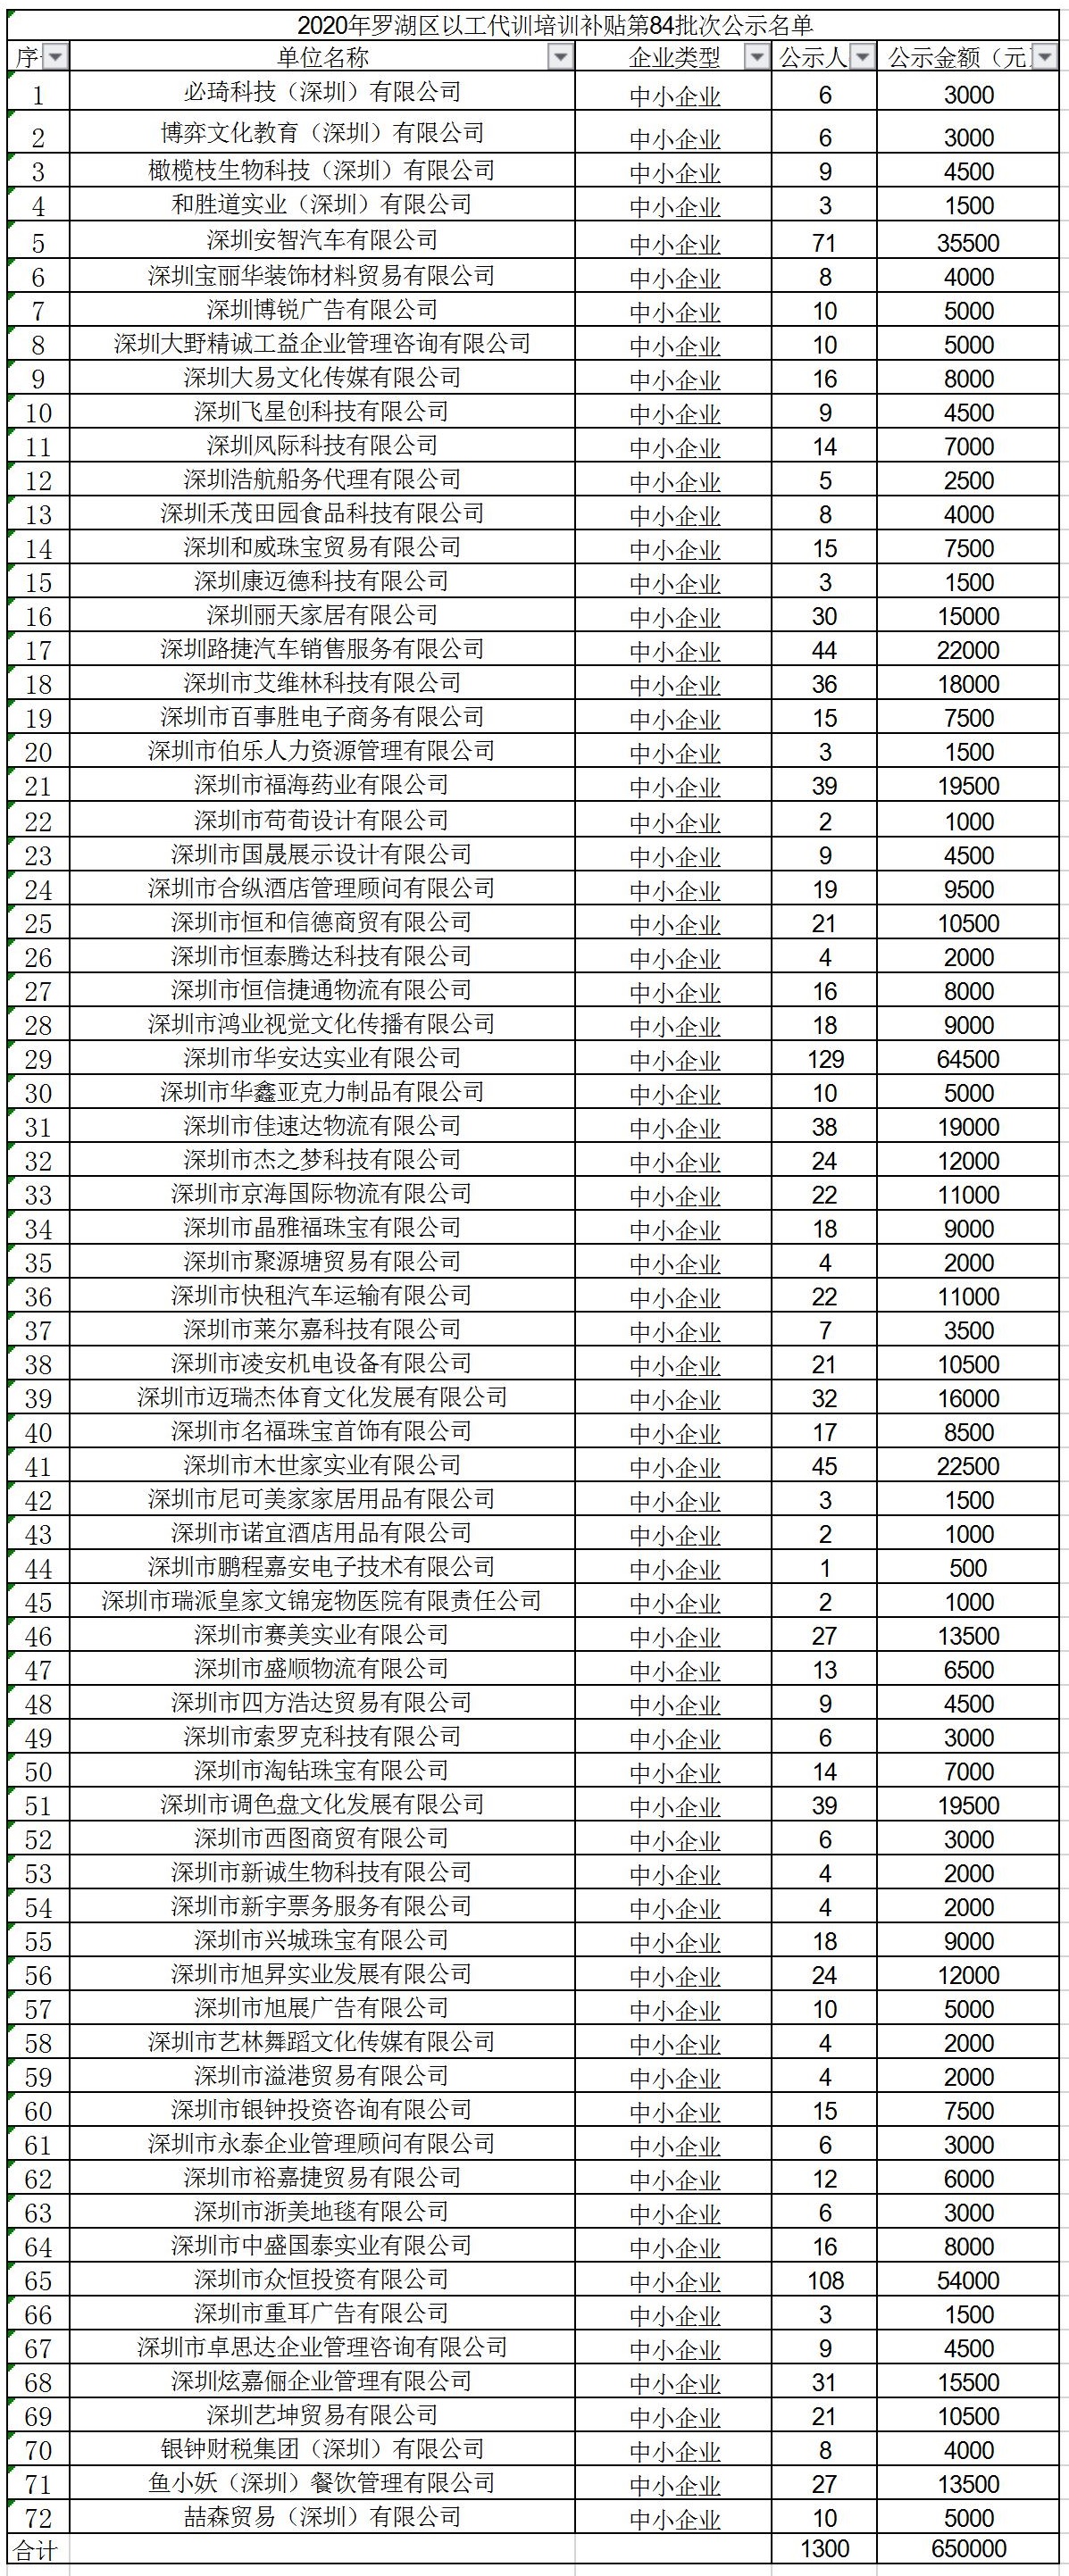 2020年深圳市罗湖区以工代训培训补贴第84批次公示名单.jpg